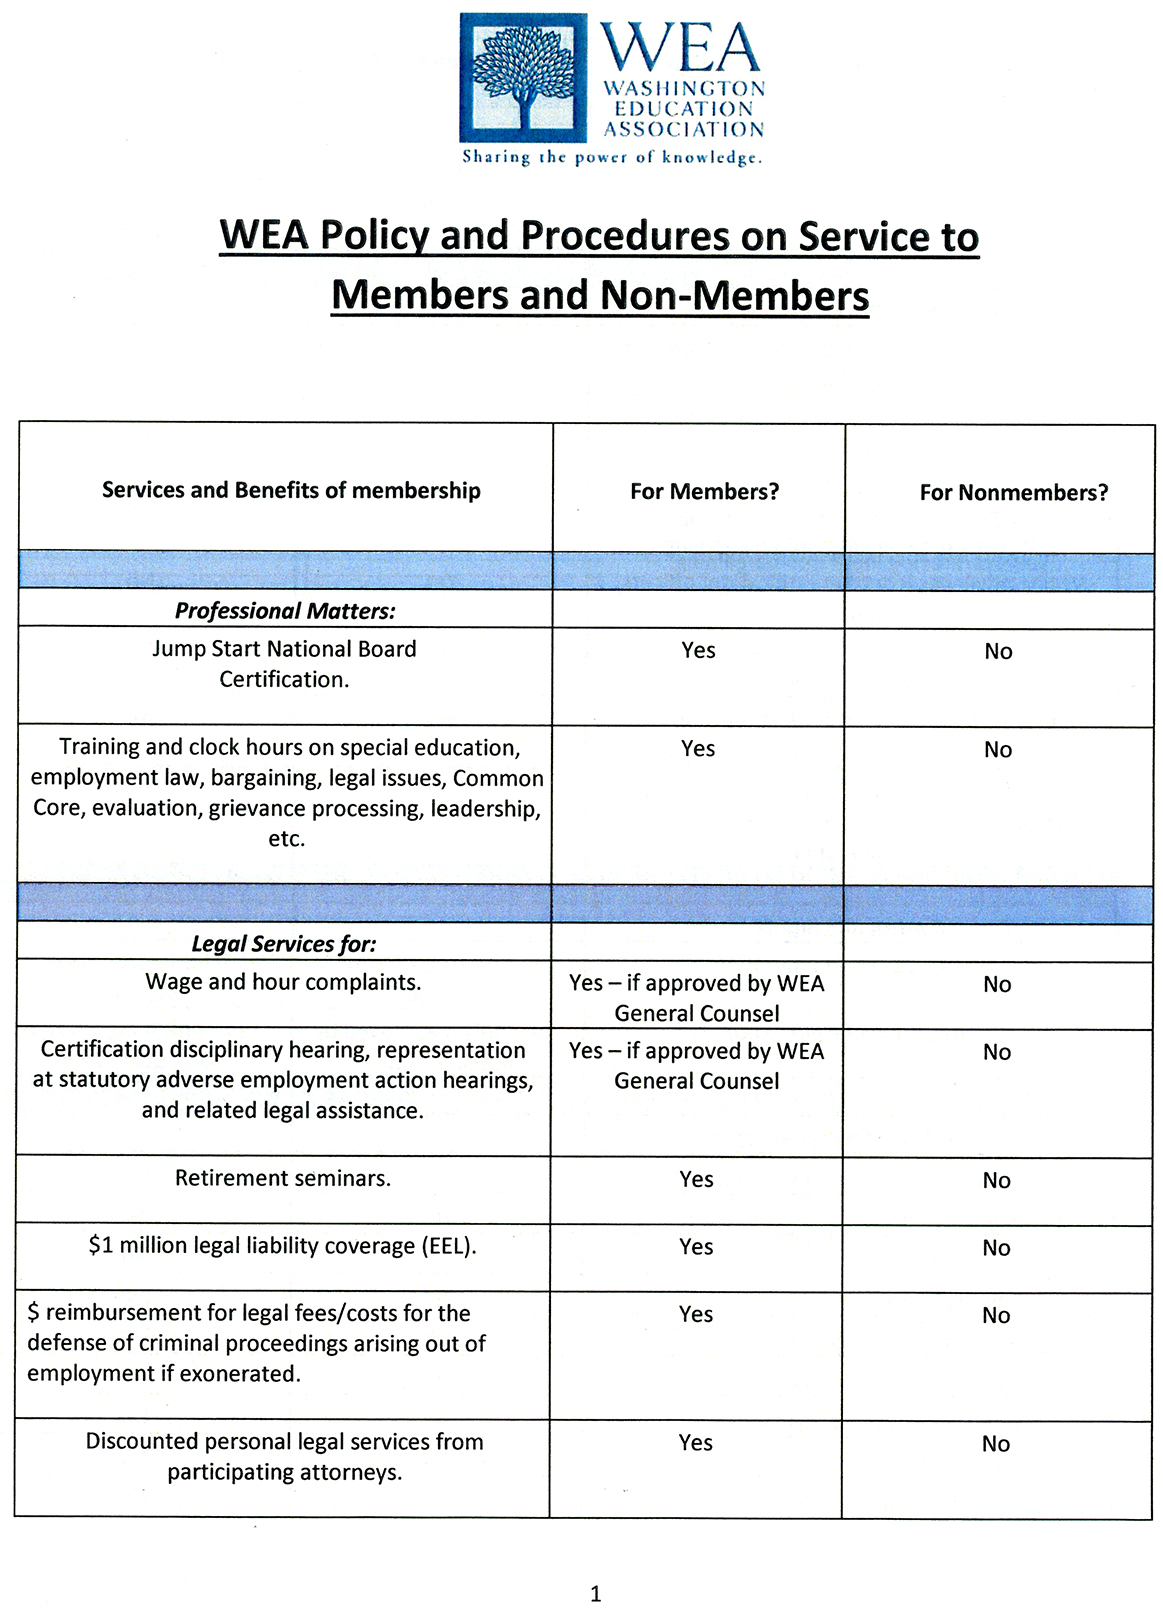 WEA Services 1